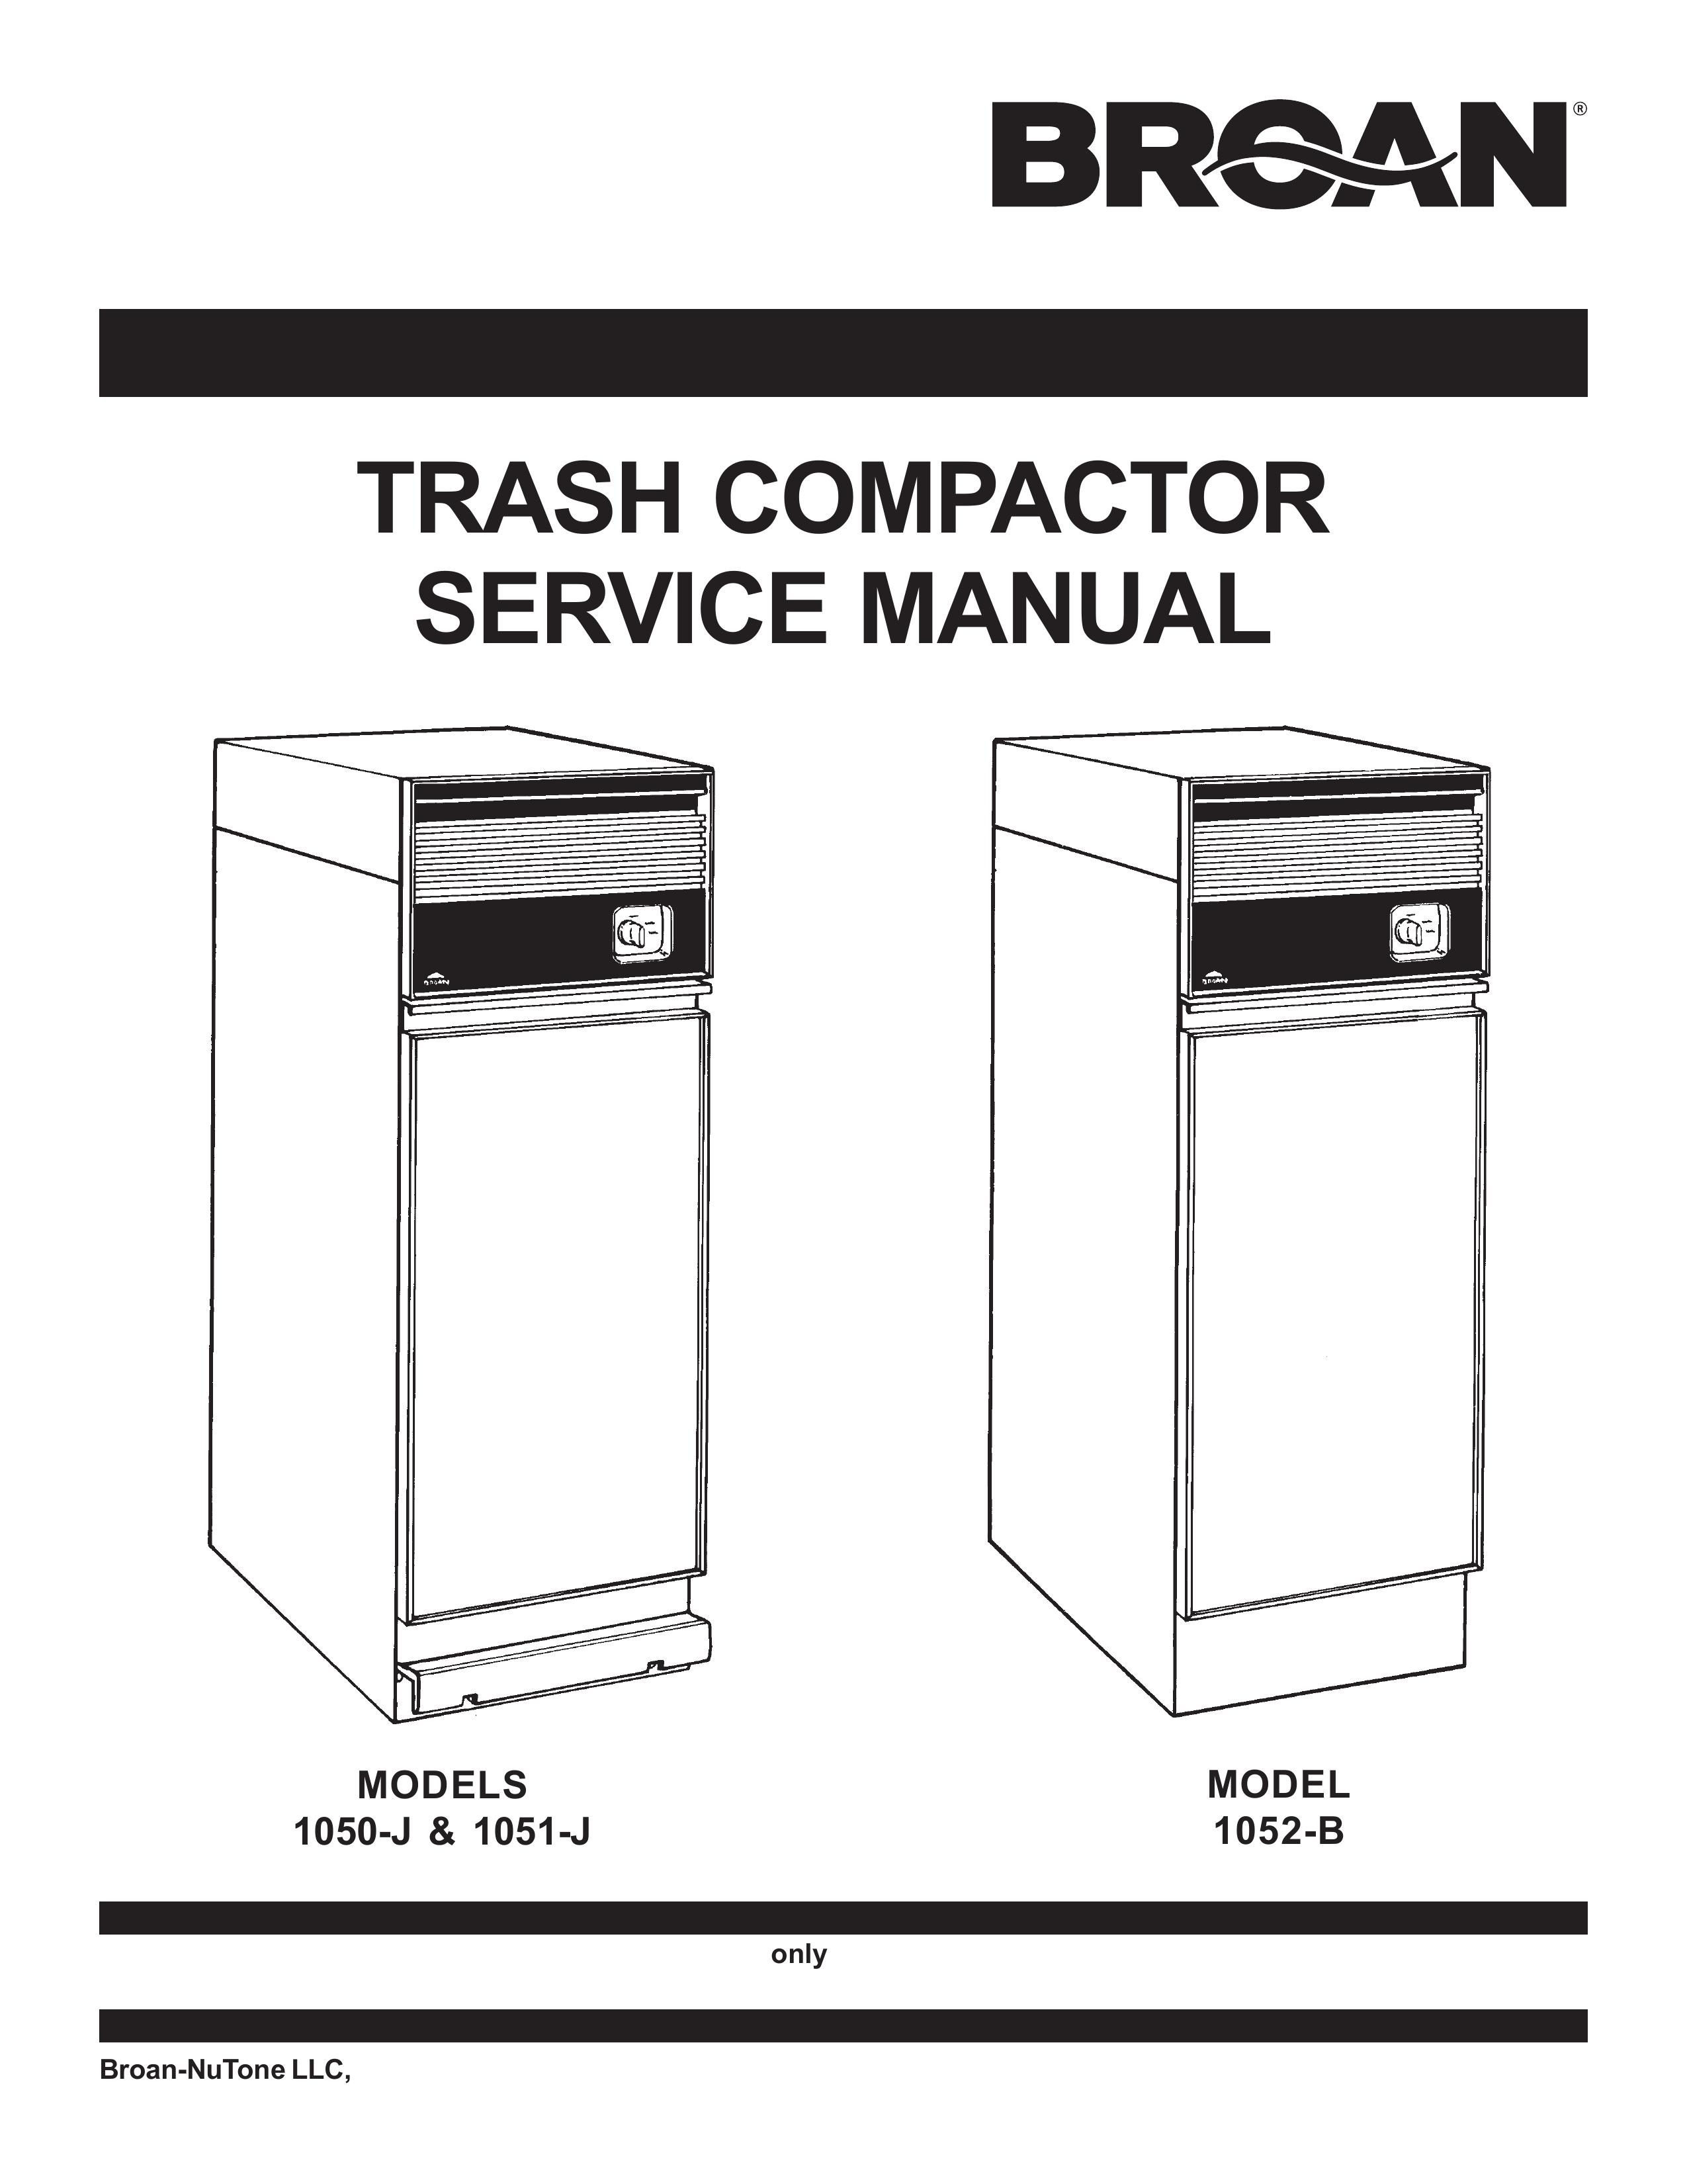 Broan 1052-B Trash Compactor User Manual